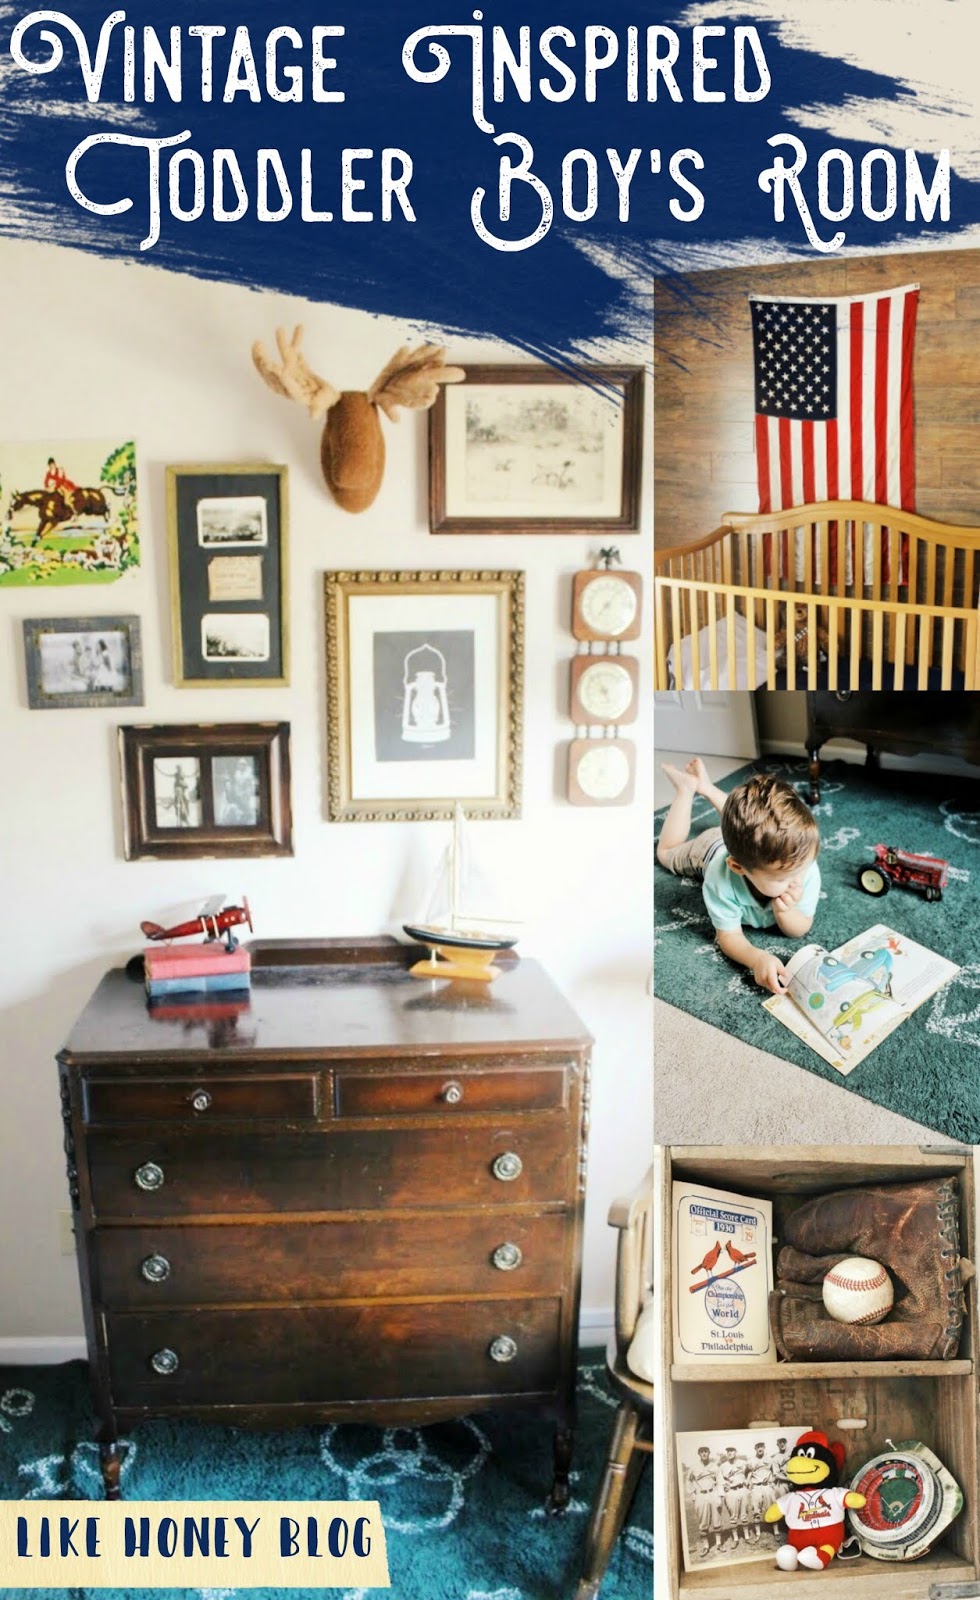 Parker's Vintage Toddler Room - Like Honey